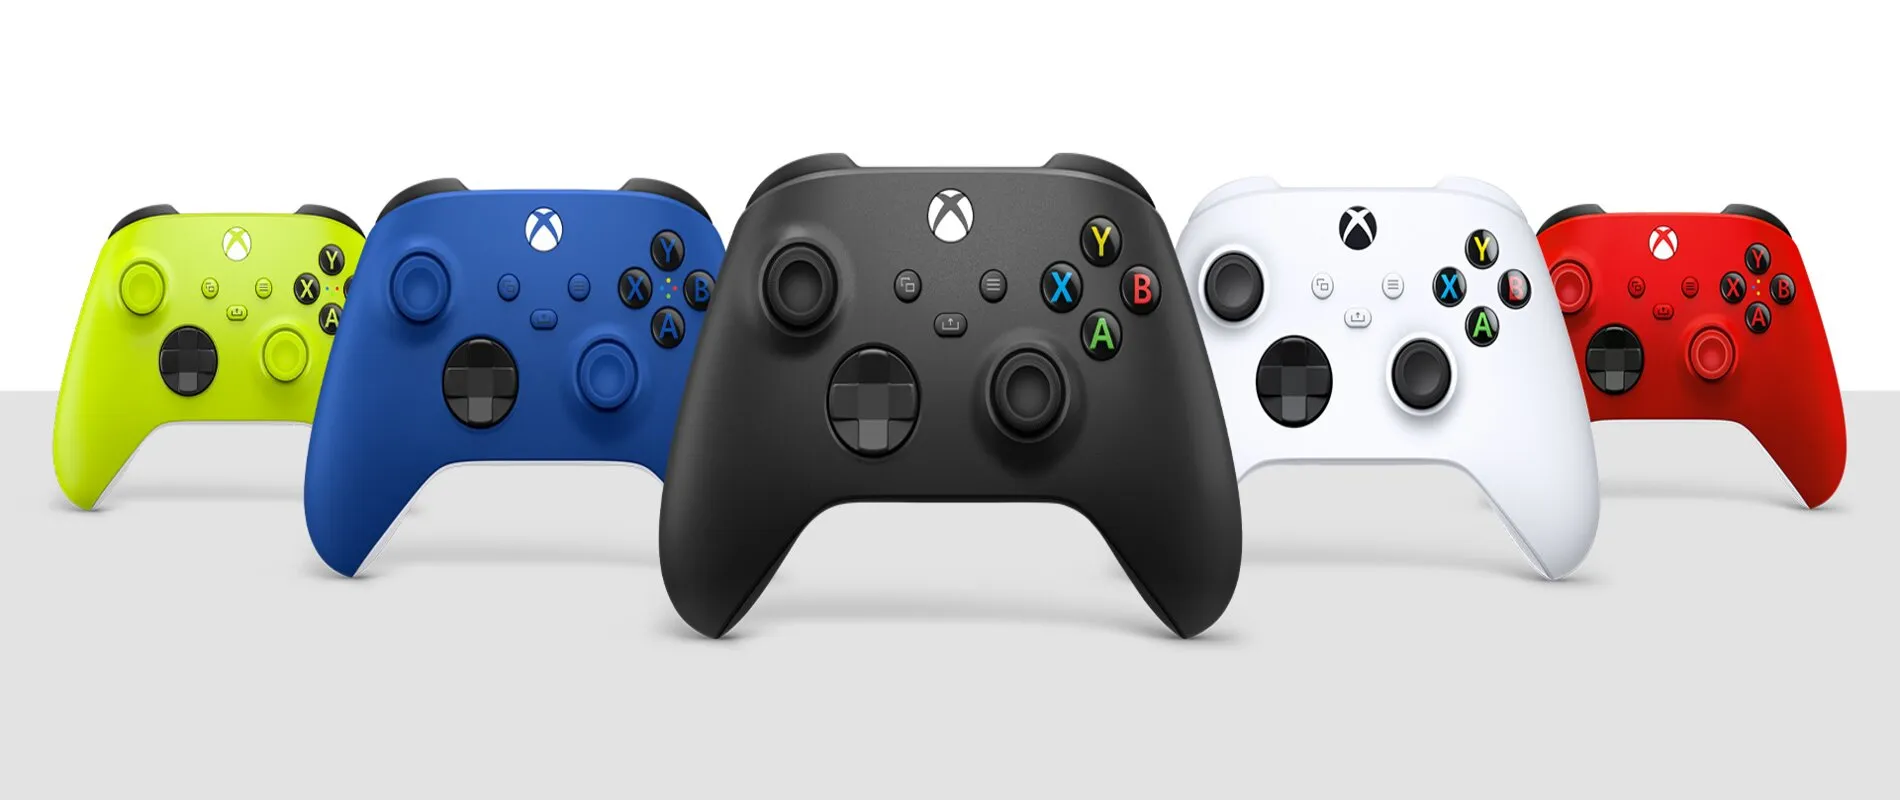 Scegliere il Miglior Controller per Xbox